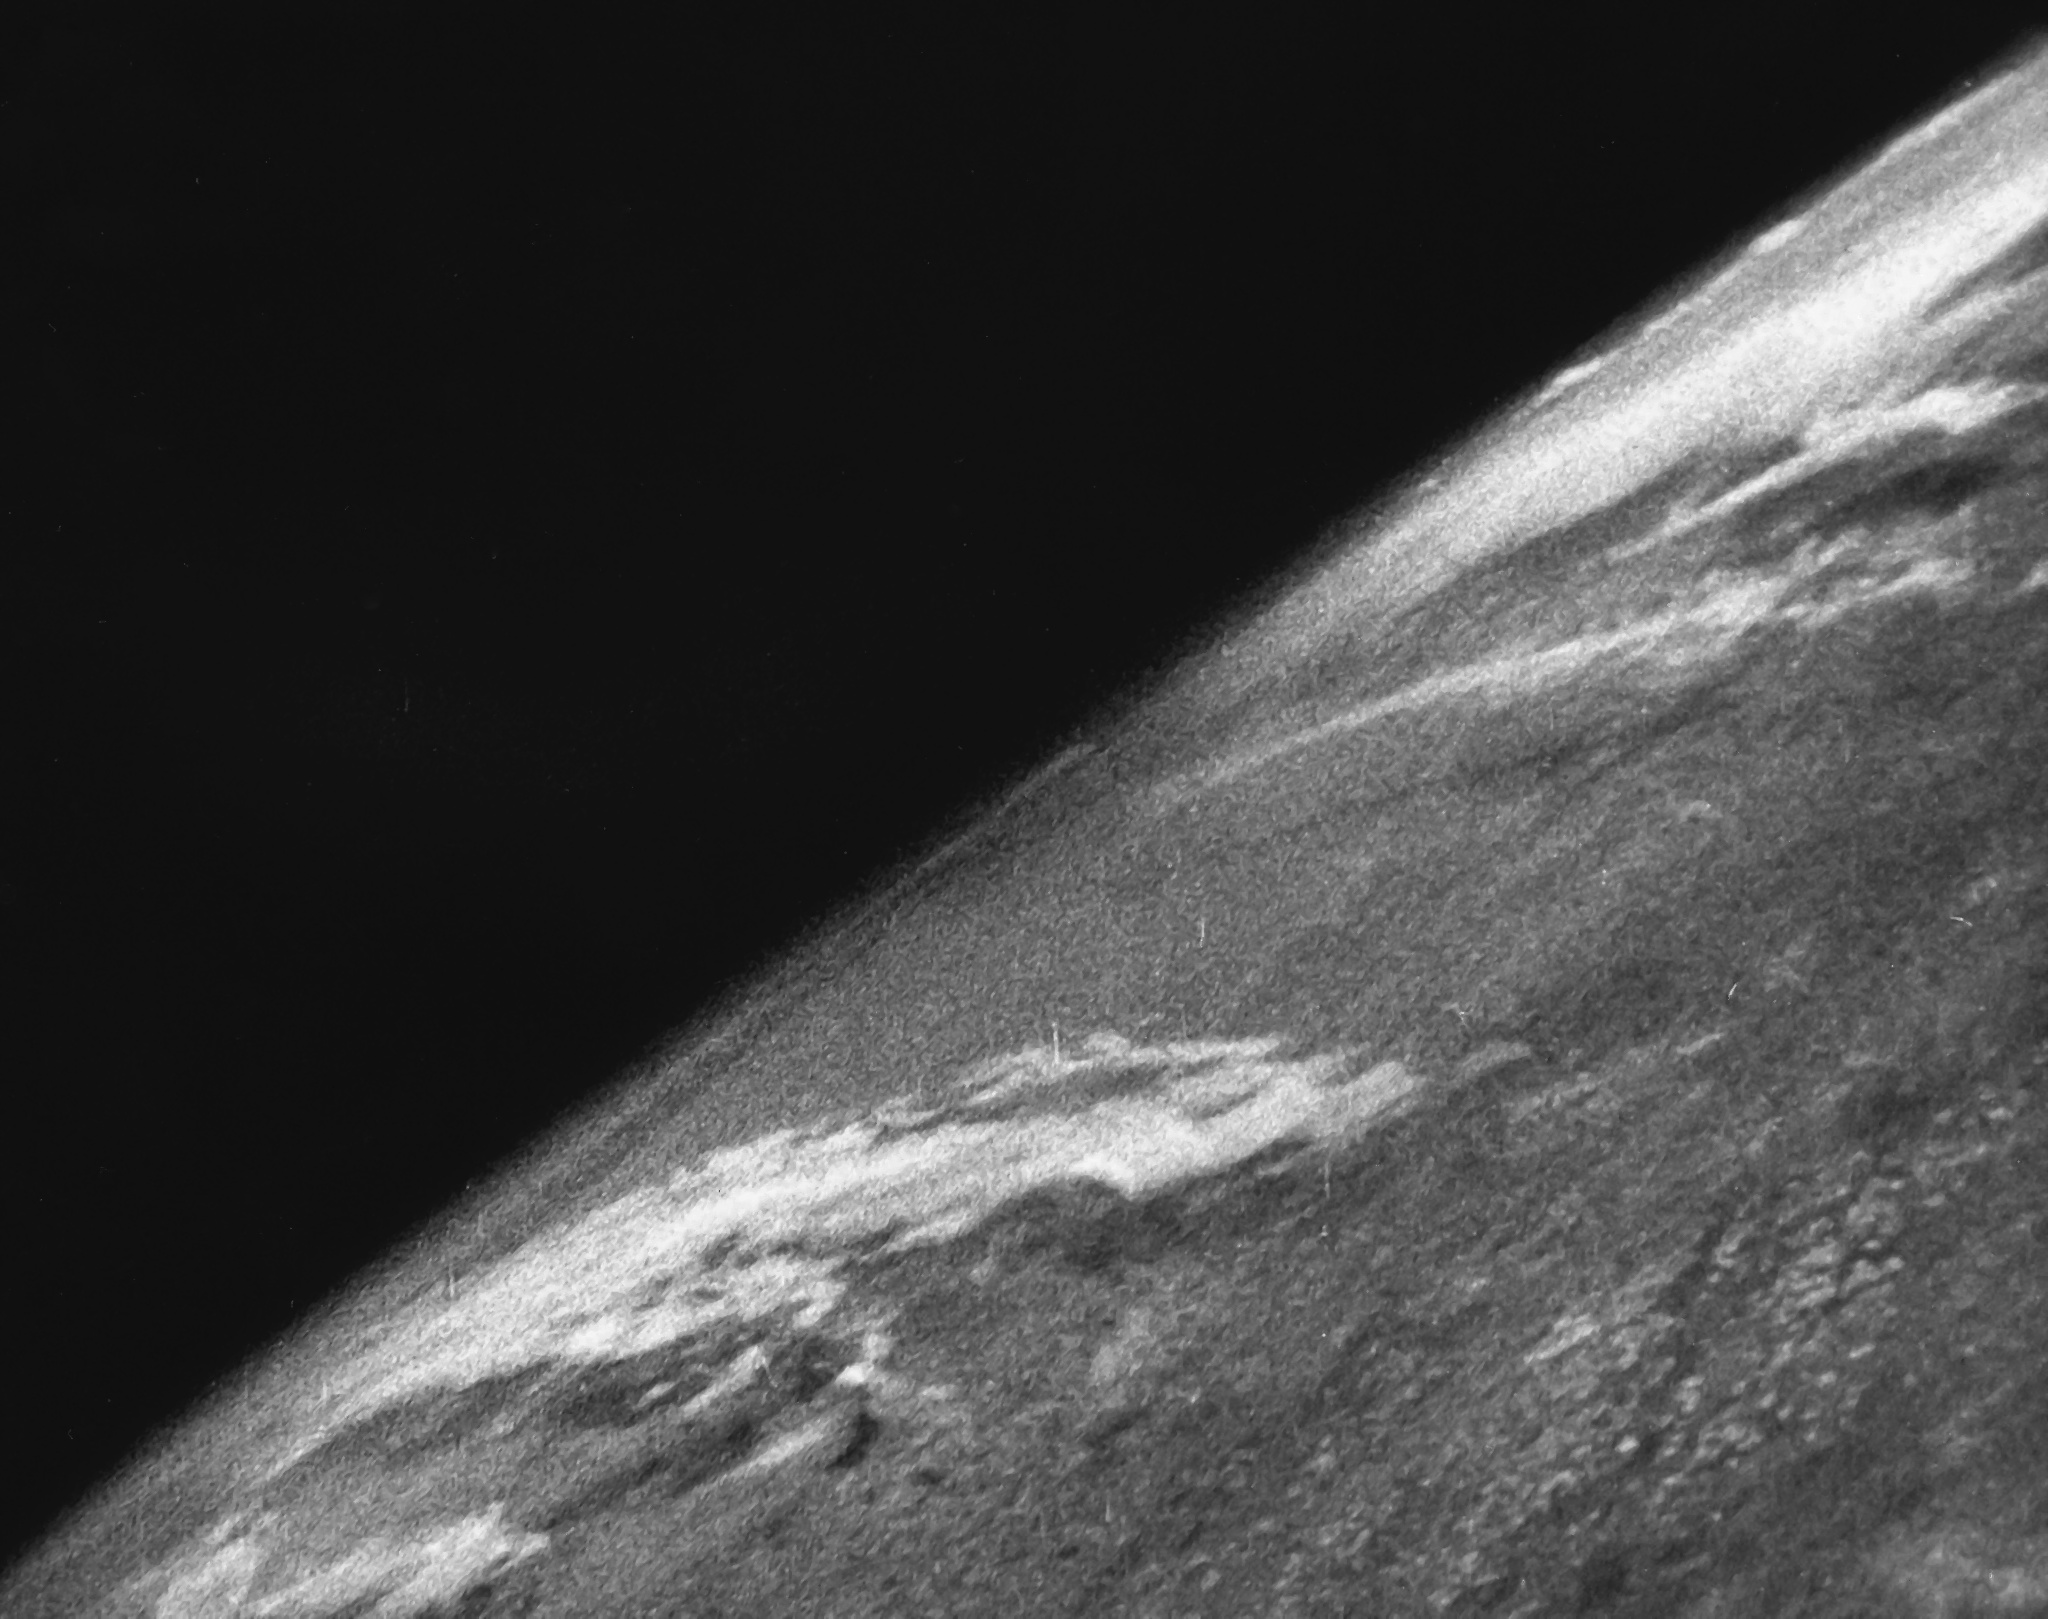  Primeras imágenes de la Tierra desde el espacio. Fuente: White Sands Missile Range/Applied Physics Laboratory.